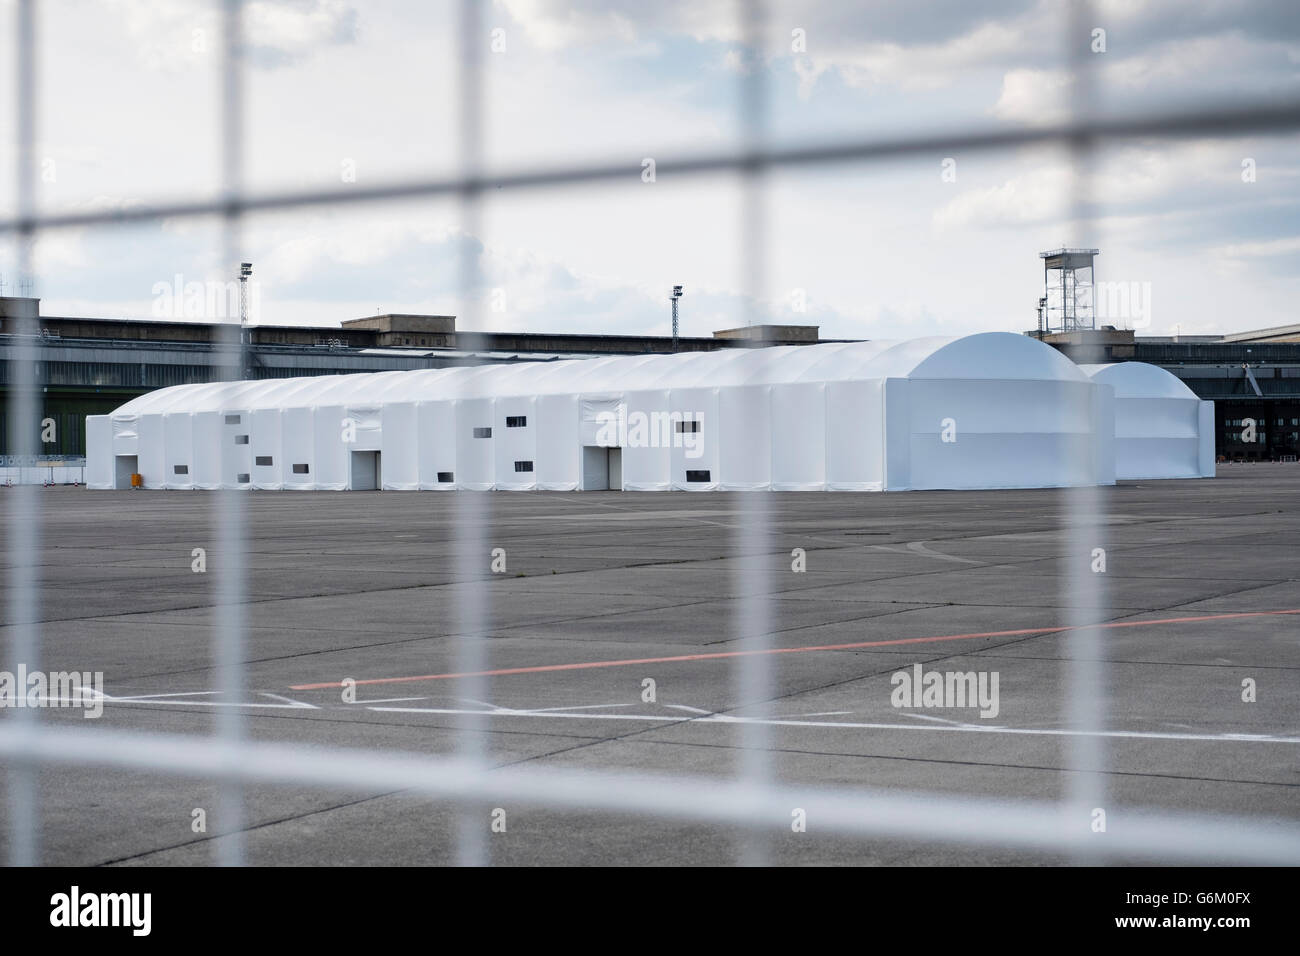 Hébergement temporaire pour demandeurs d'asile à l'ancien aéroport de Tempelhof à Berlin Allemagne Banque D'Images